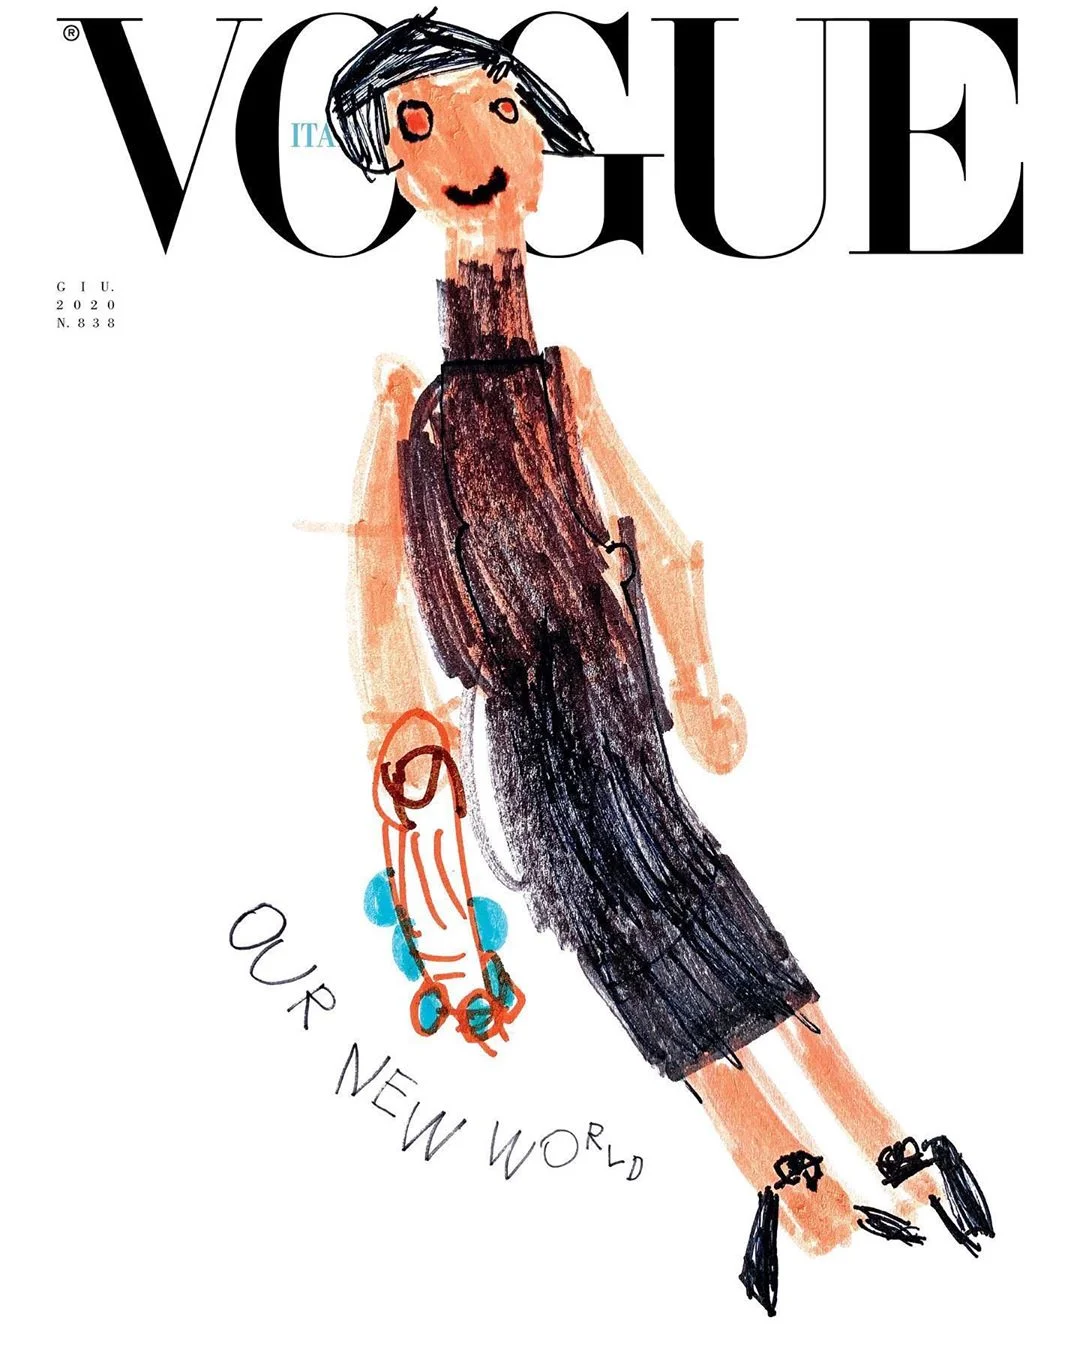 Уперше в історії обкладинку Vogue прикрасили дитячі малюнки - фото 480760